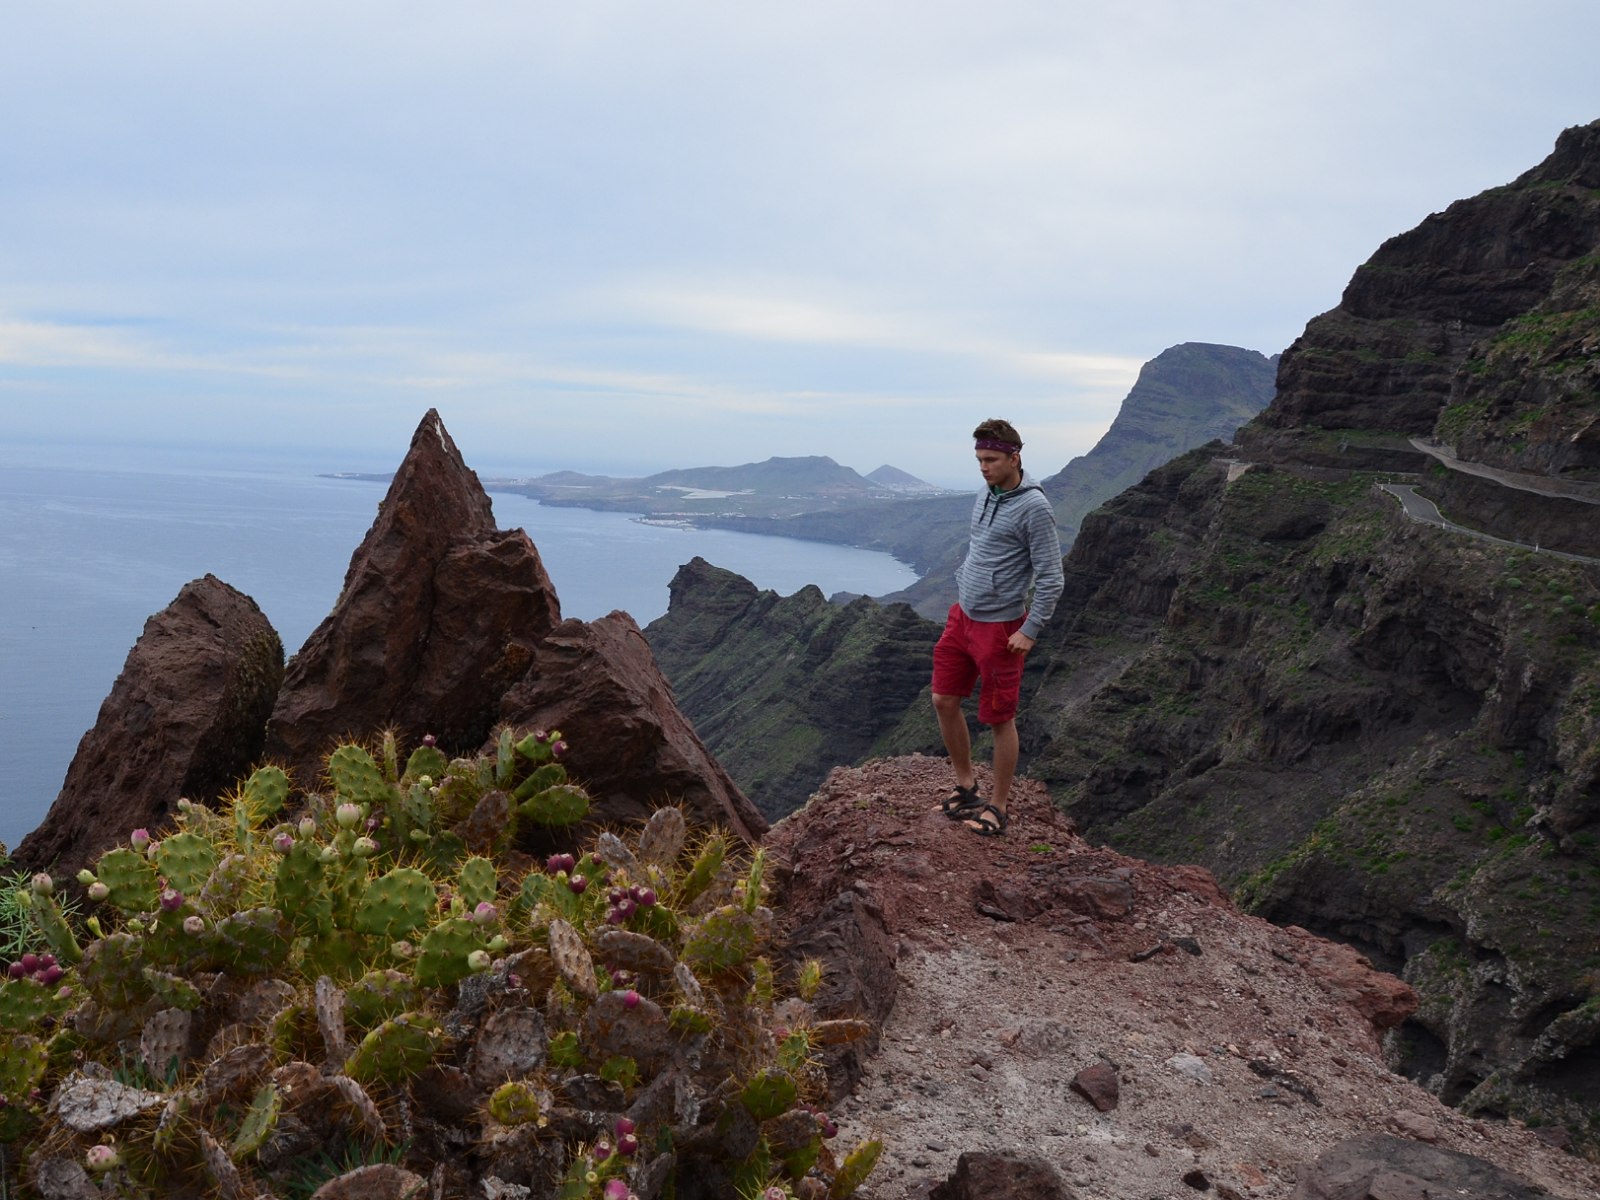 6. Widok na ocean z wybrzeża północnej części wyspy Gran Canaria.